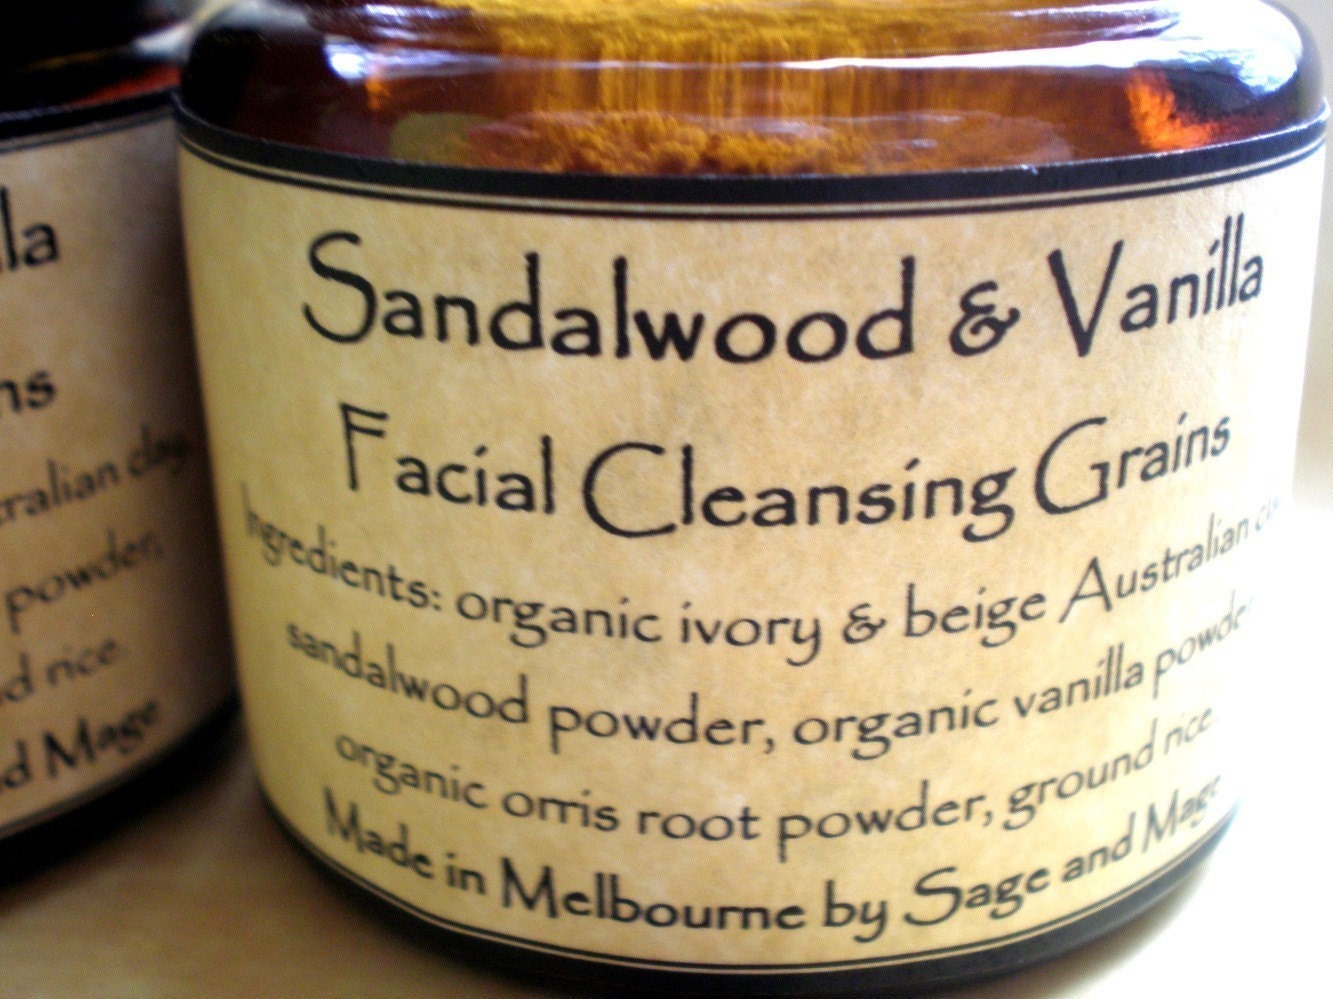 SANDALWOOD and VANILLA - facial cleansing grains - all natural, vegan